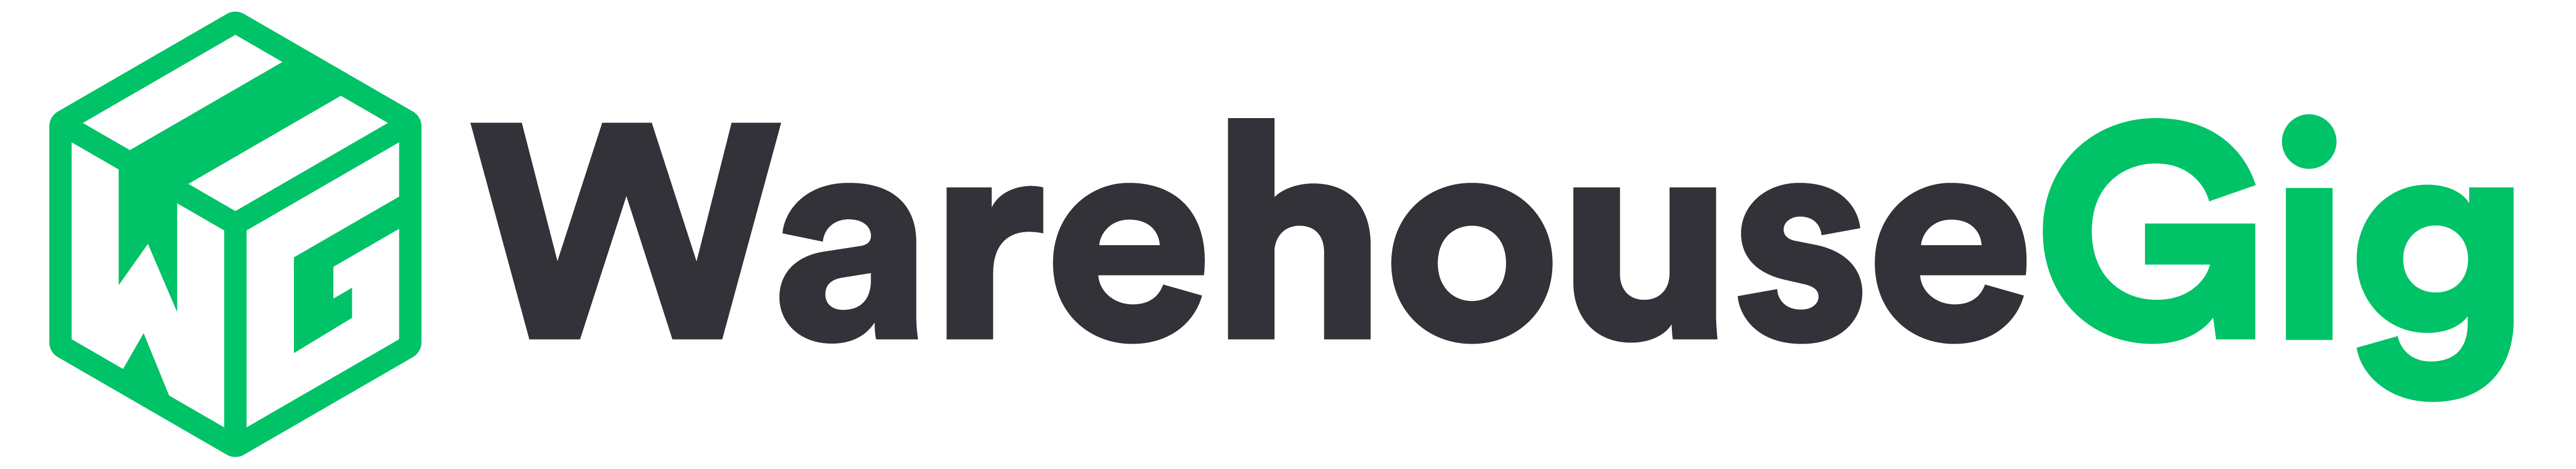 WarehouseGig Logo